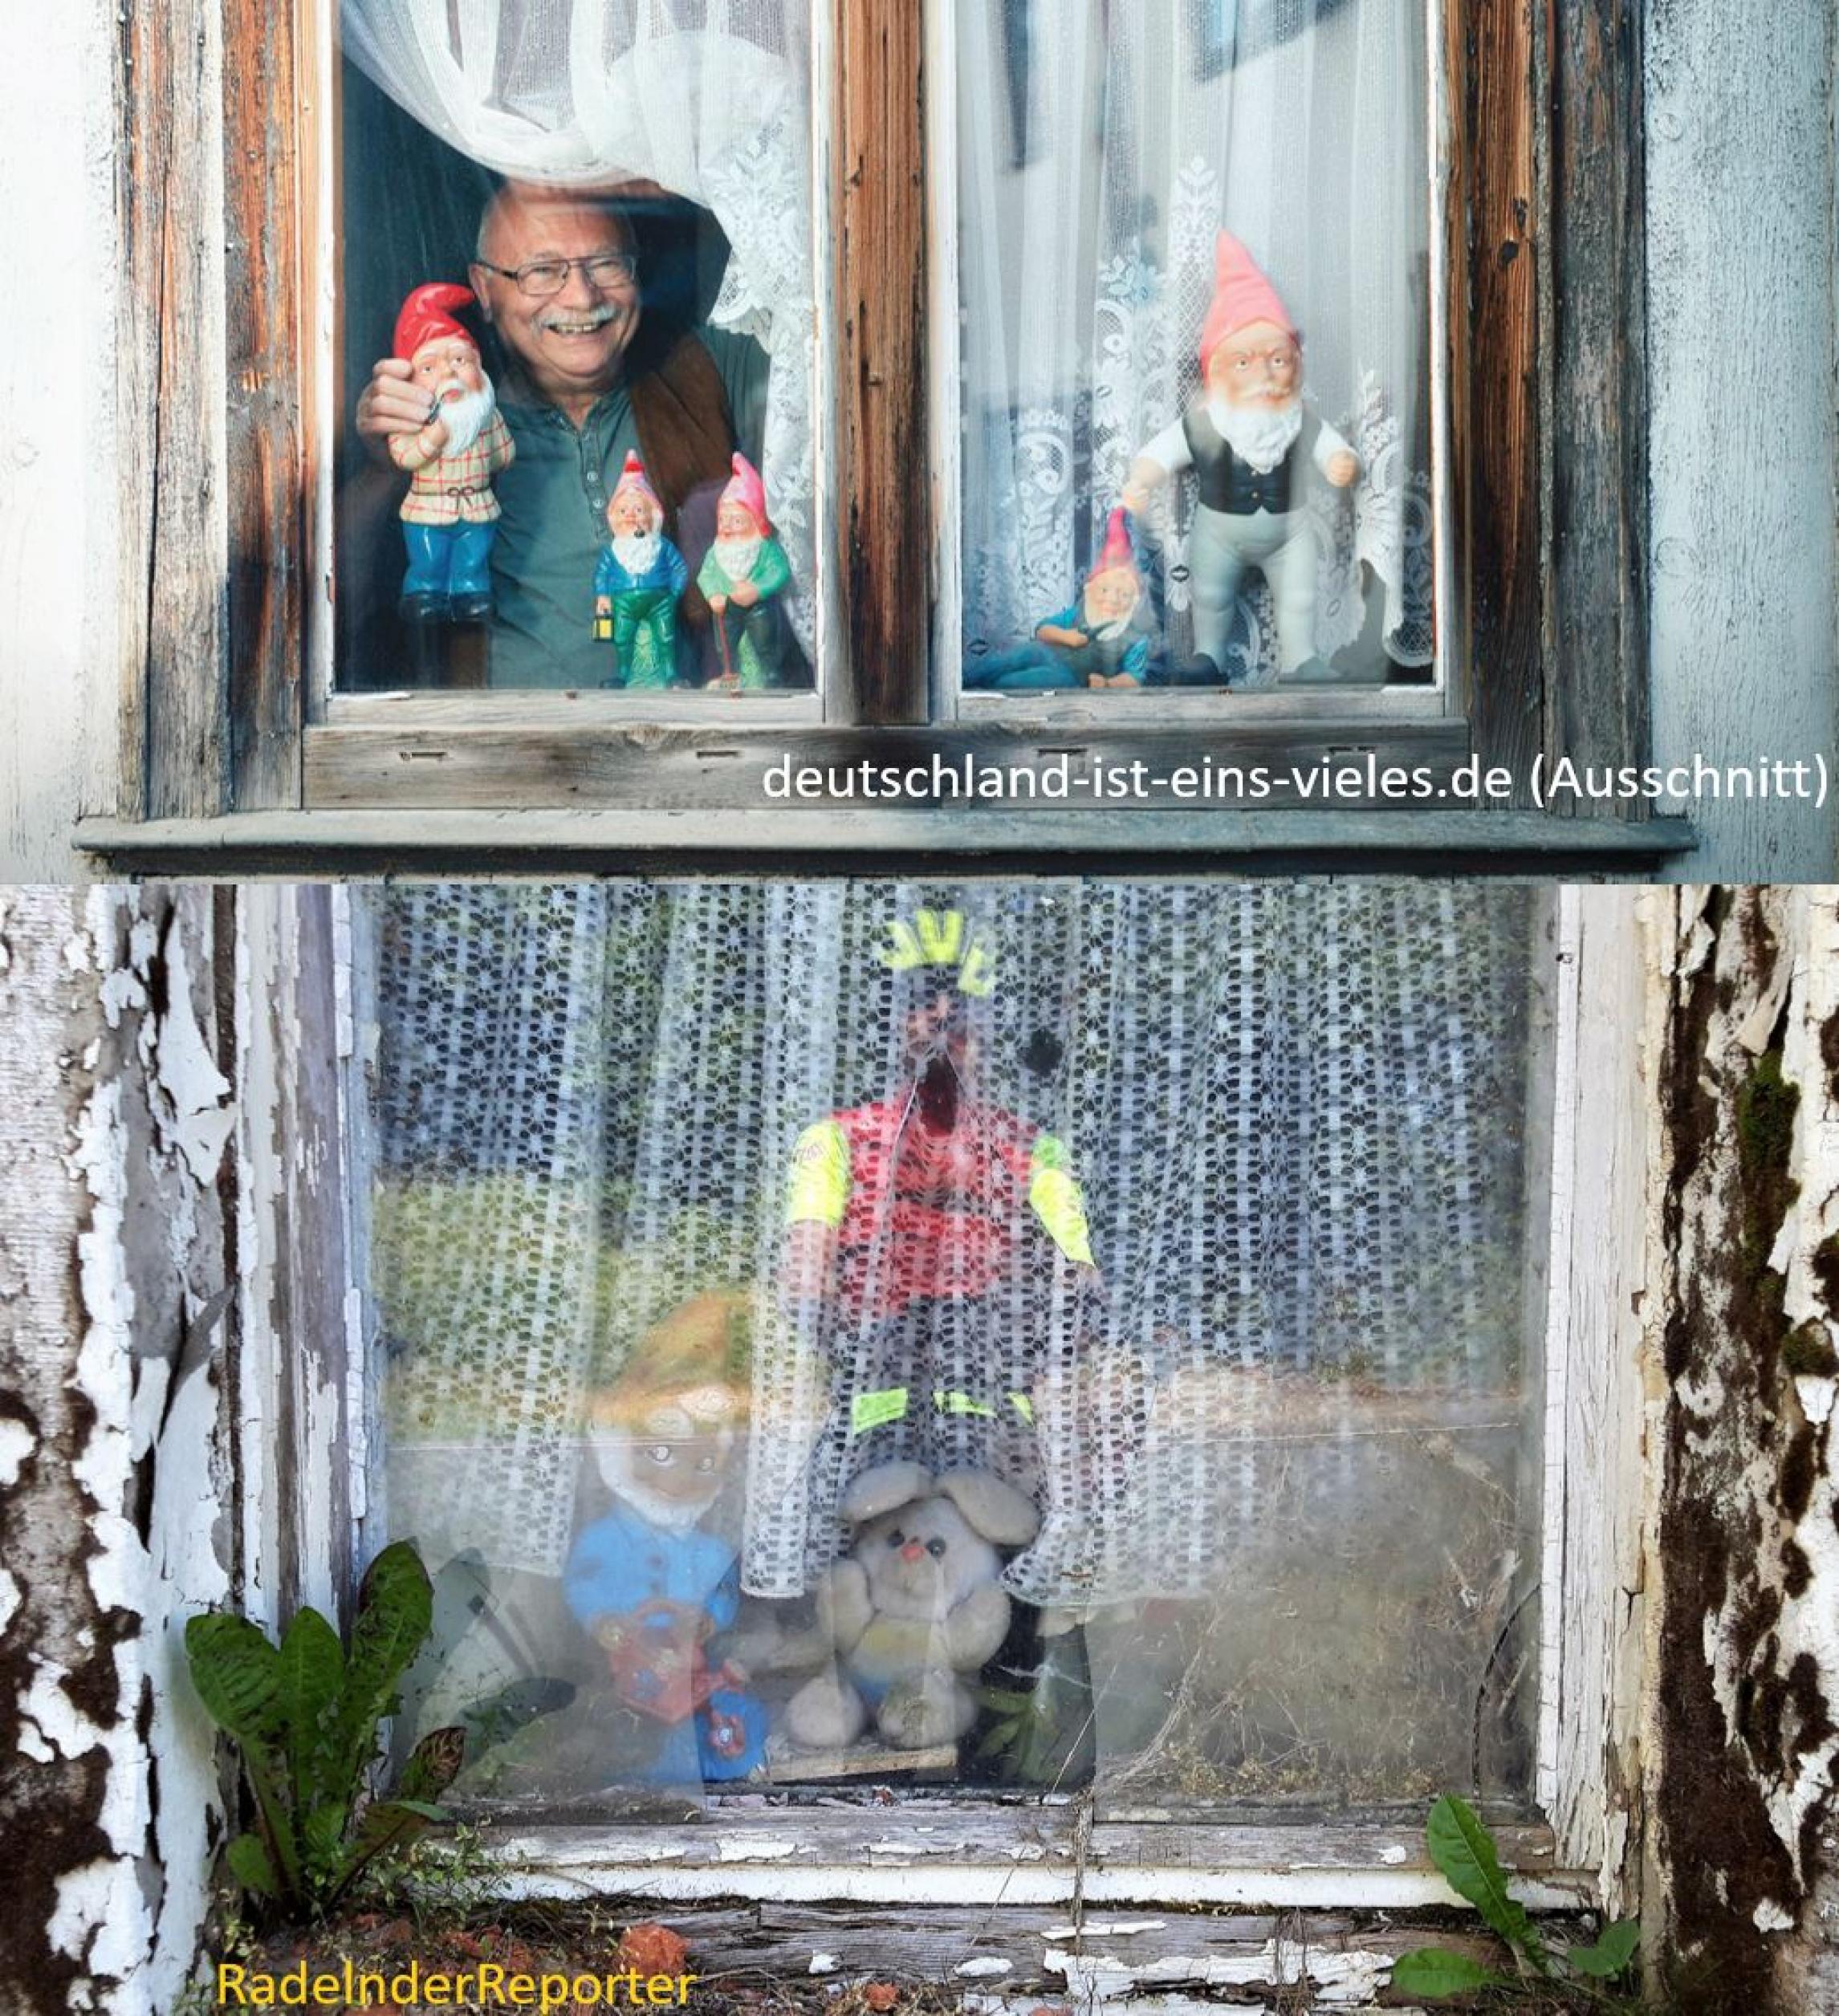 zweigeteiltes Bild: oben das Bild der Regierungskampagne, unten das des RadelndenReporters; beide Bilder zeigen Deko-Artikel in einem Wohnungsfenster.